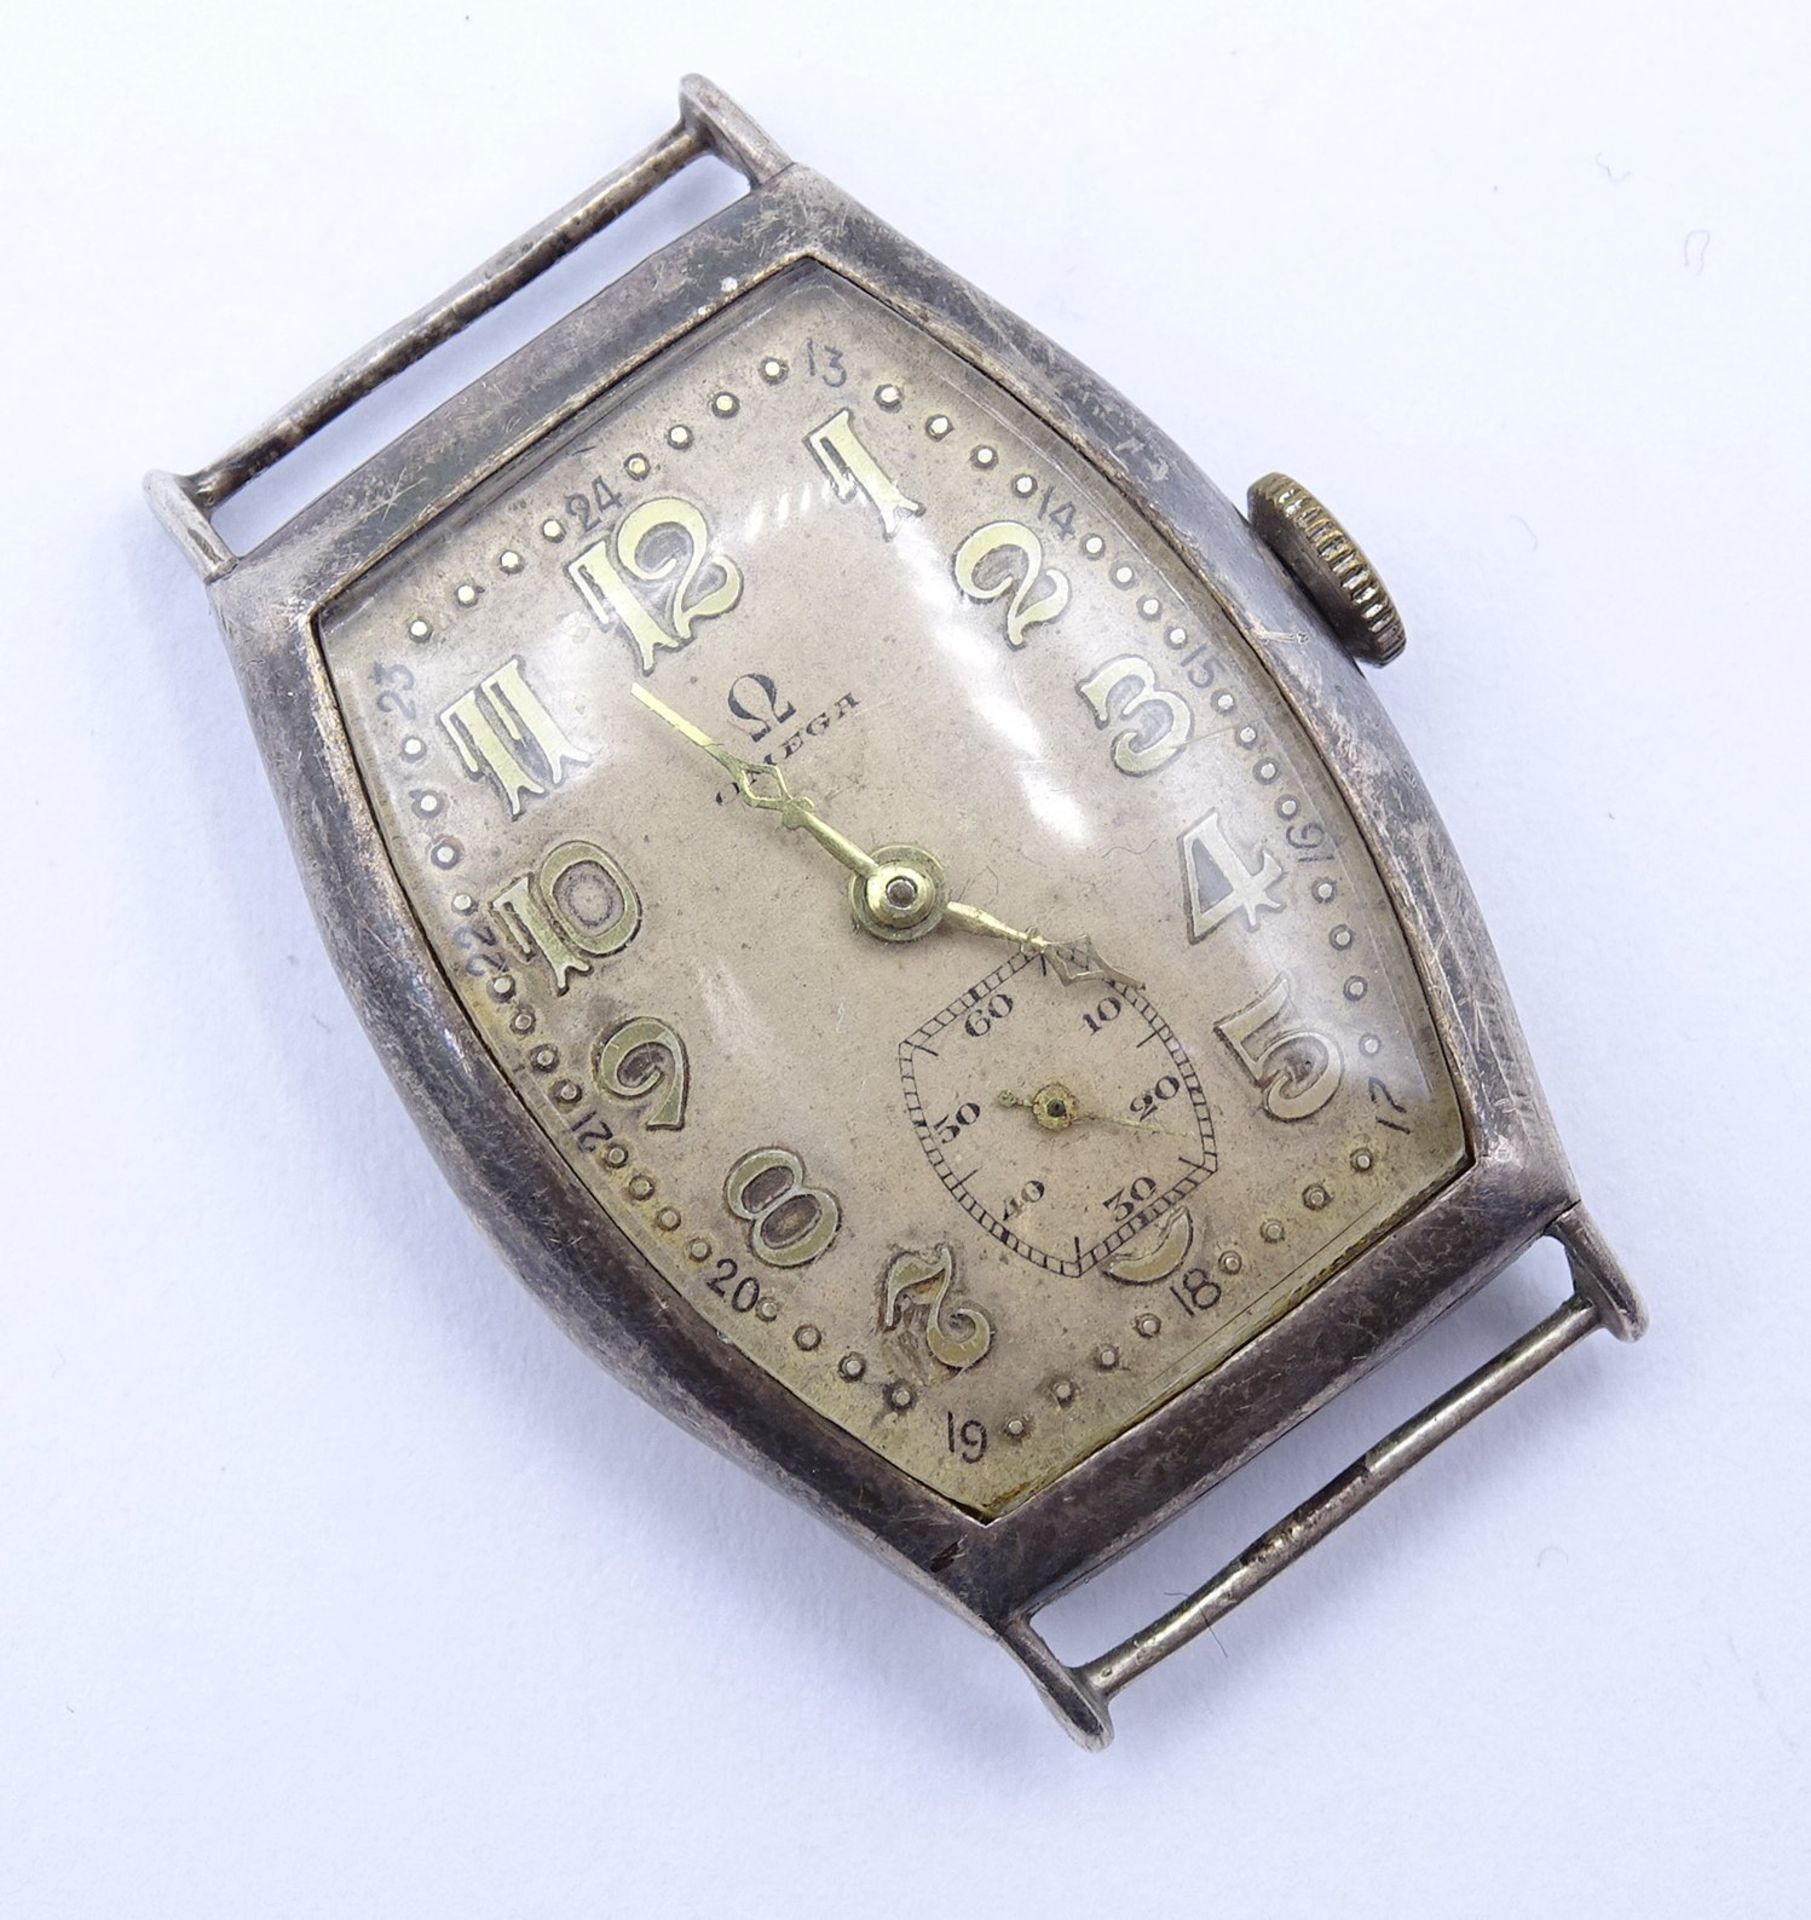 Alte Damen Armbanduhr "Omega", Cal. 23.7 S T2, mechanisch, Werk läuft kurz an, Silbergehäuse 0.925, - Image 2 of 4